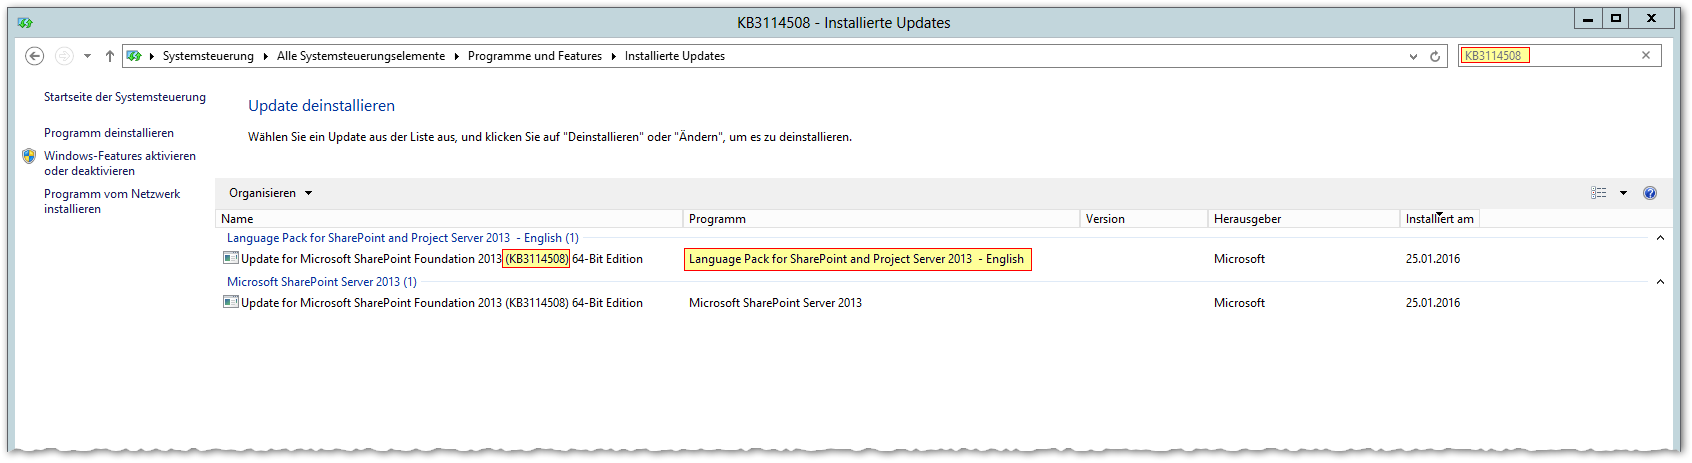 Installierte Updates - KB3114508 - Die Installation ist abgeschlossen - zweite Komponente installiert